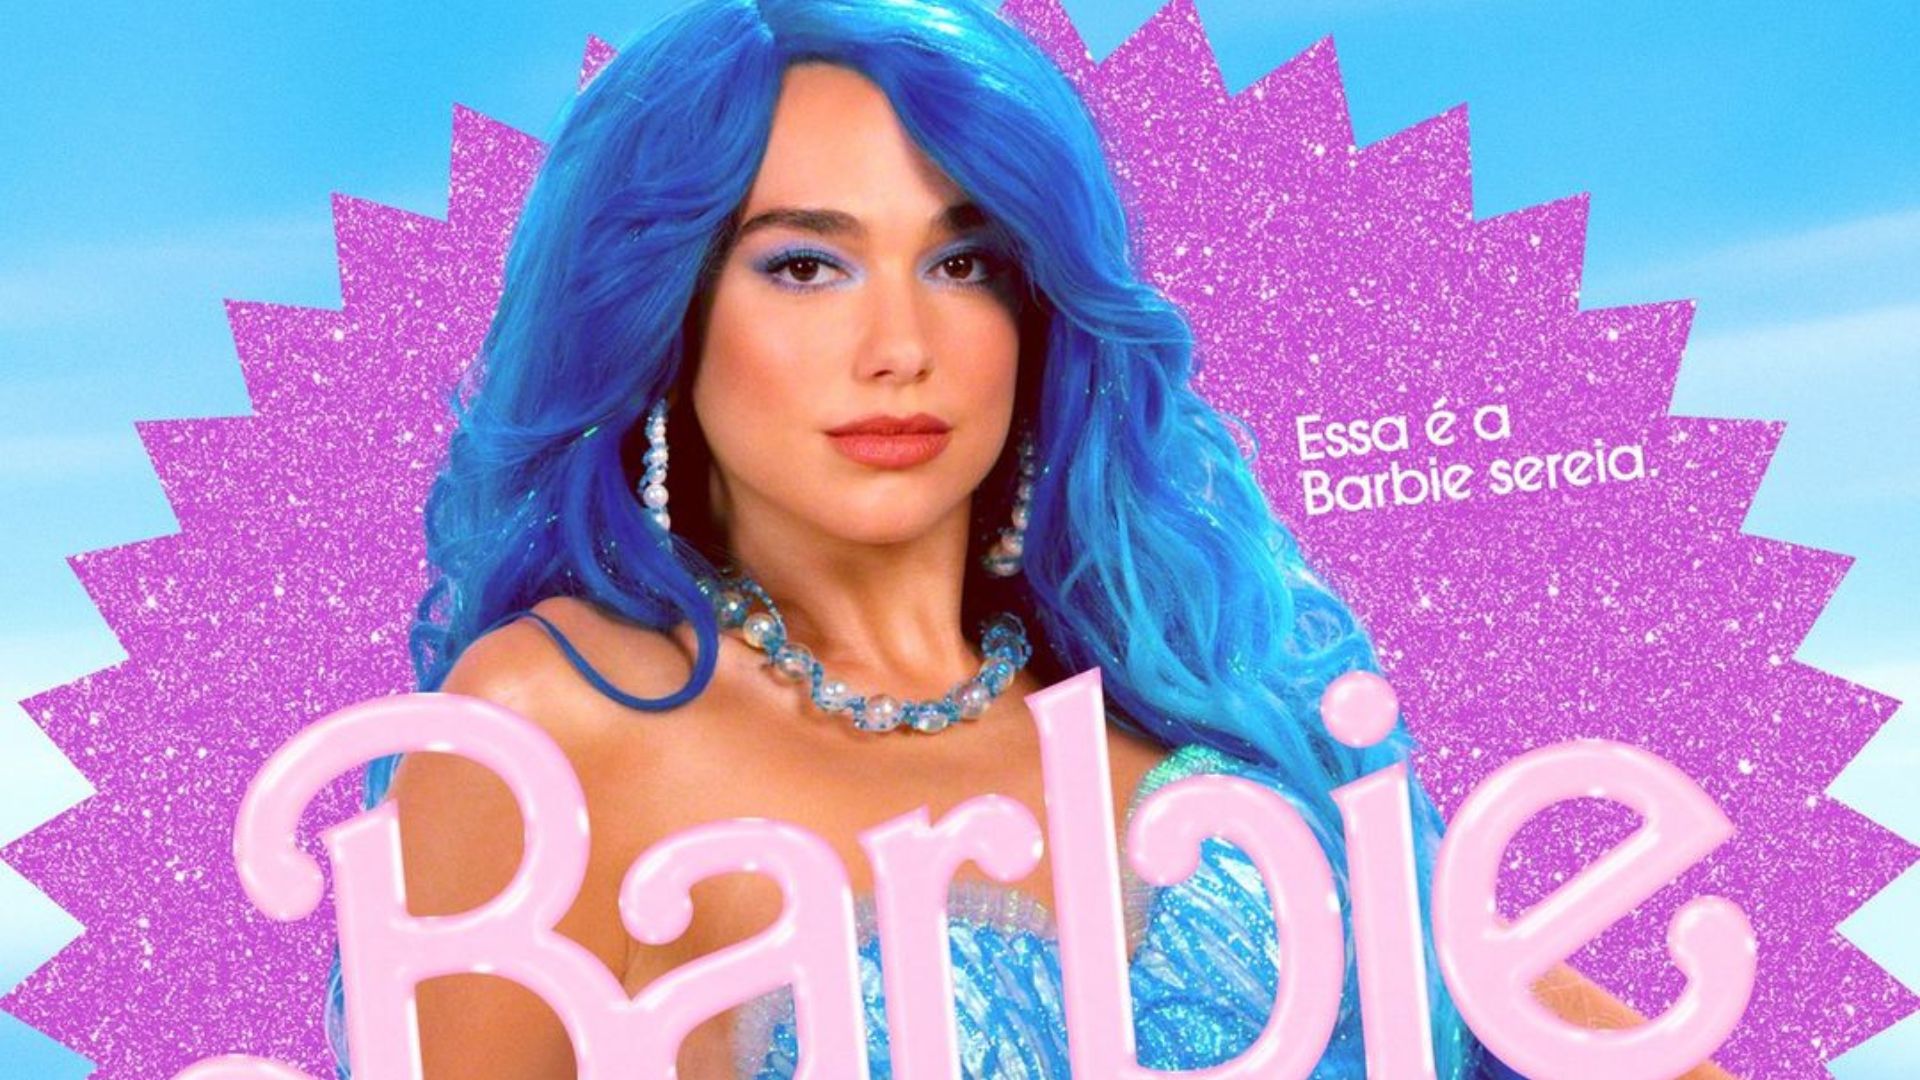 Estreando no cinema, Dua Lipa interpretará a Barbie sereia em "Barbie" (Foto: Reprodução/Warner Bros. Pictures)